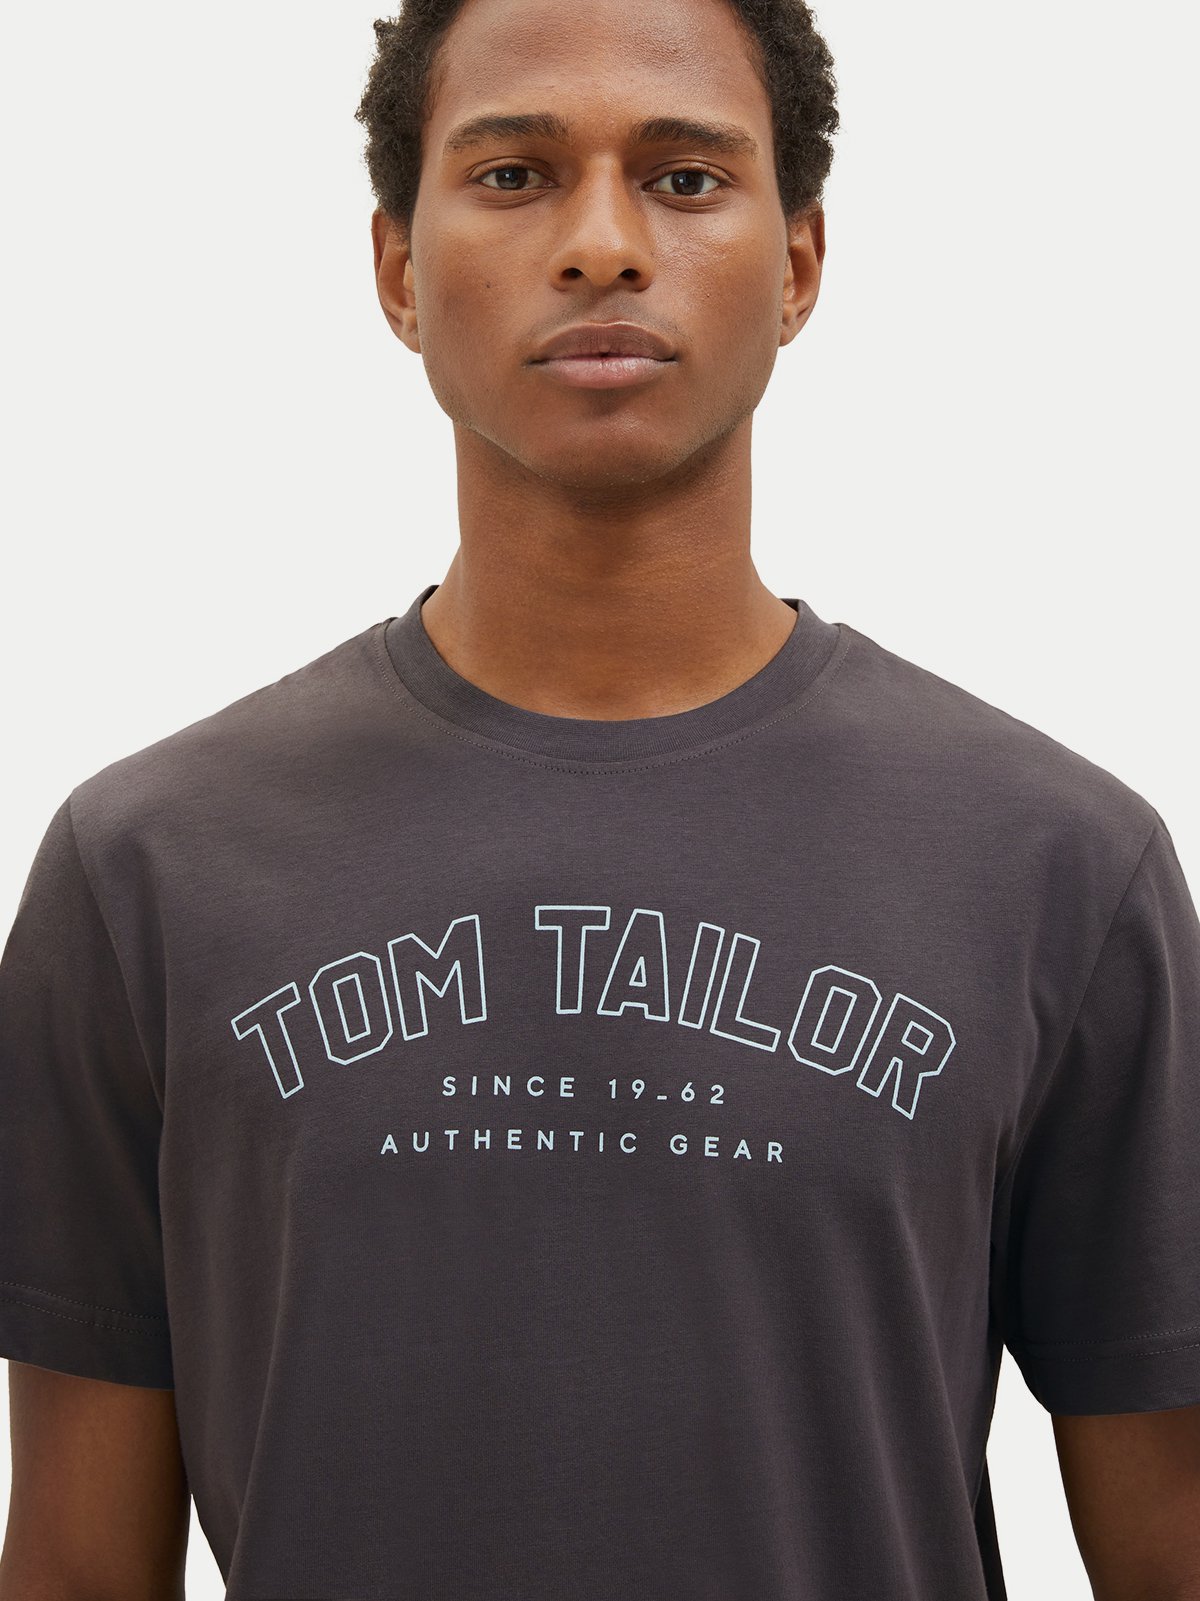 s/s t-shirt Men\'s Tailor Tom